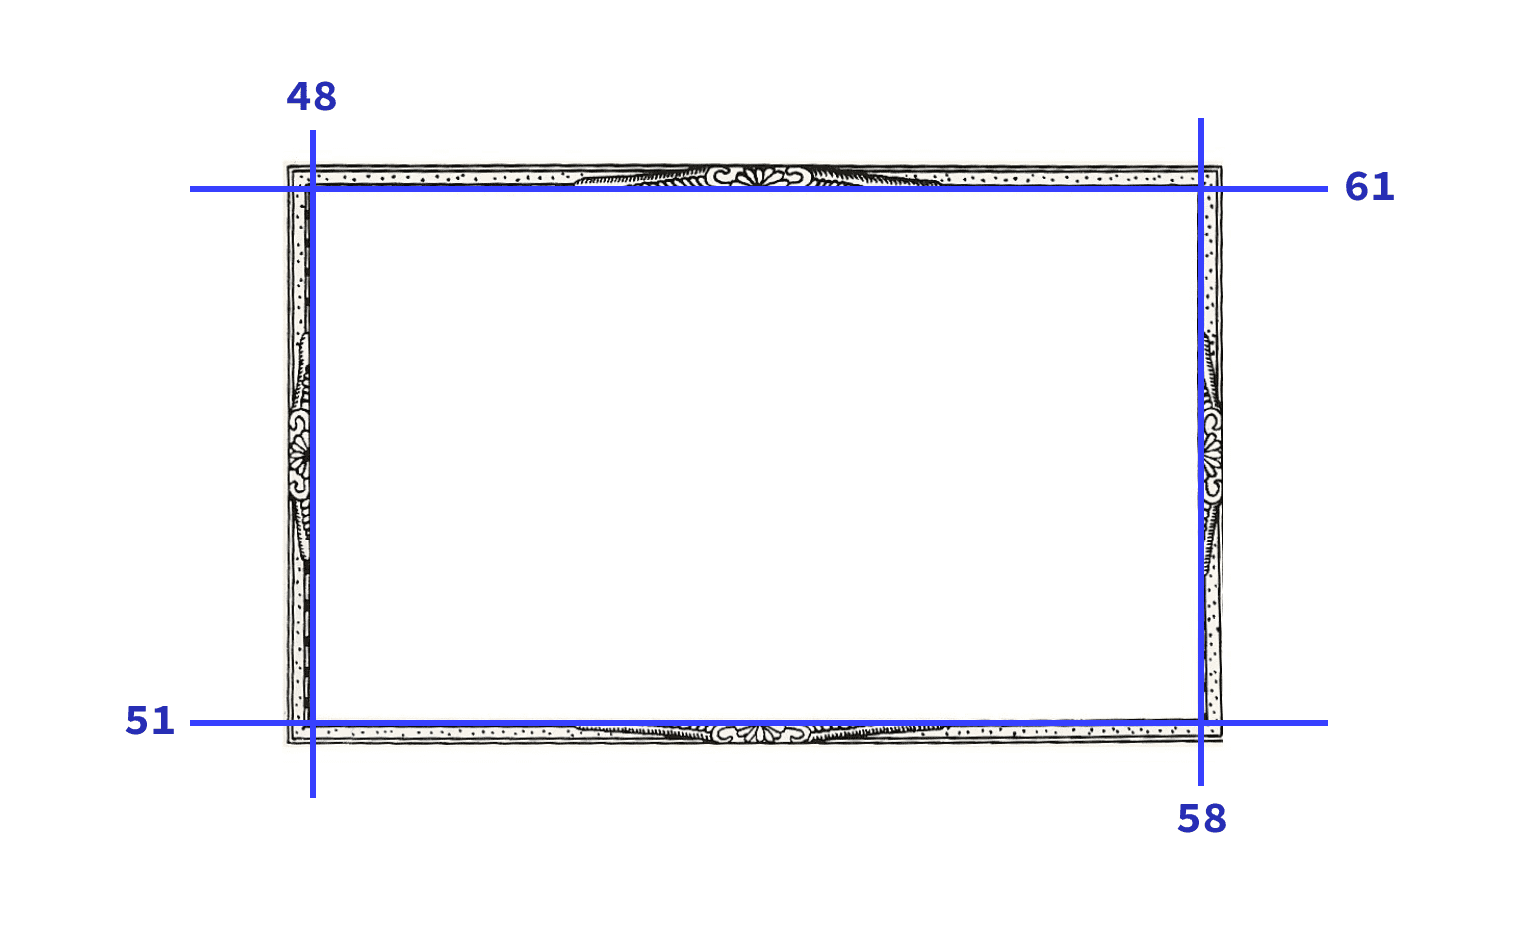 الصورة المستخدمة في العرض التوضيحي مع الشرائح الأربع المعروضة بخطوط زرقاء